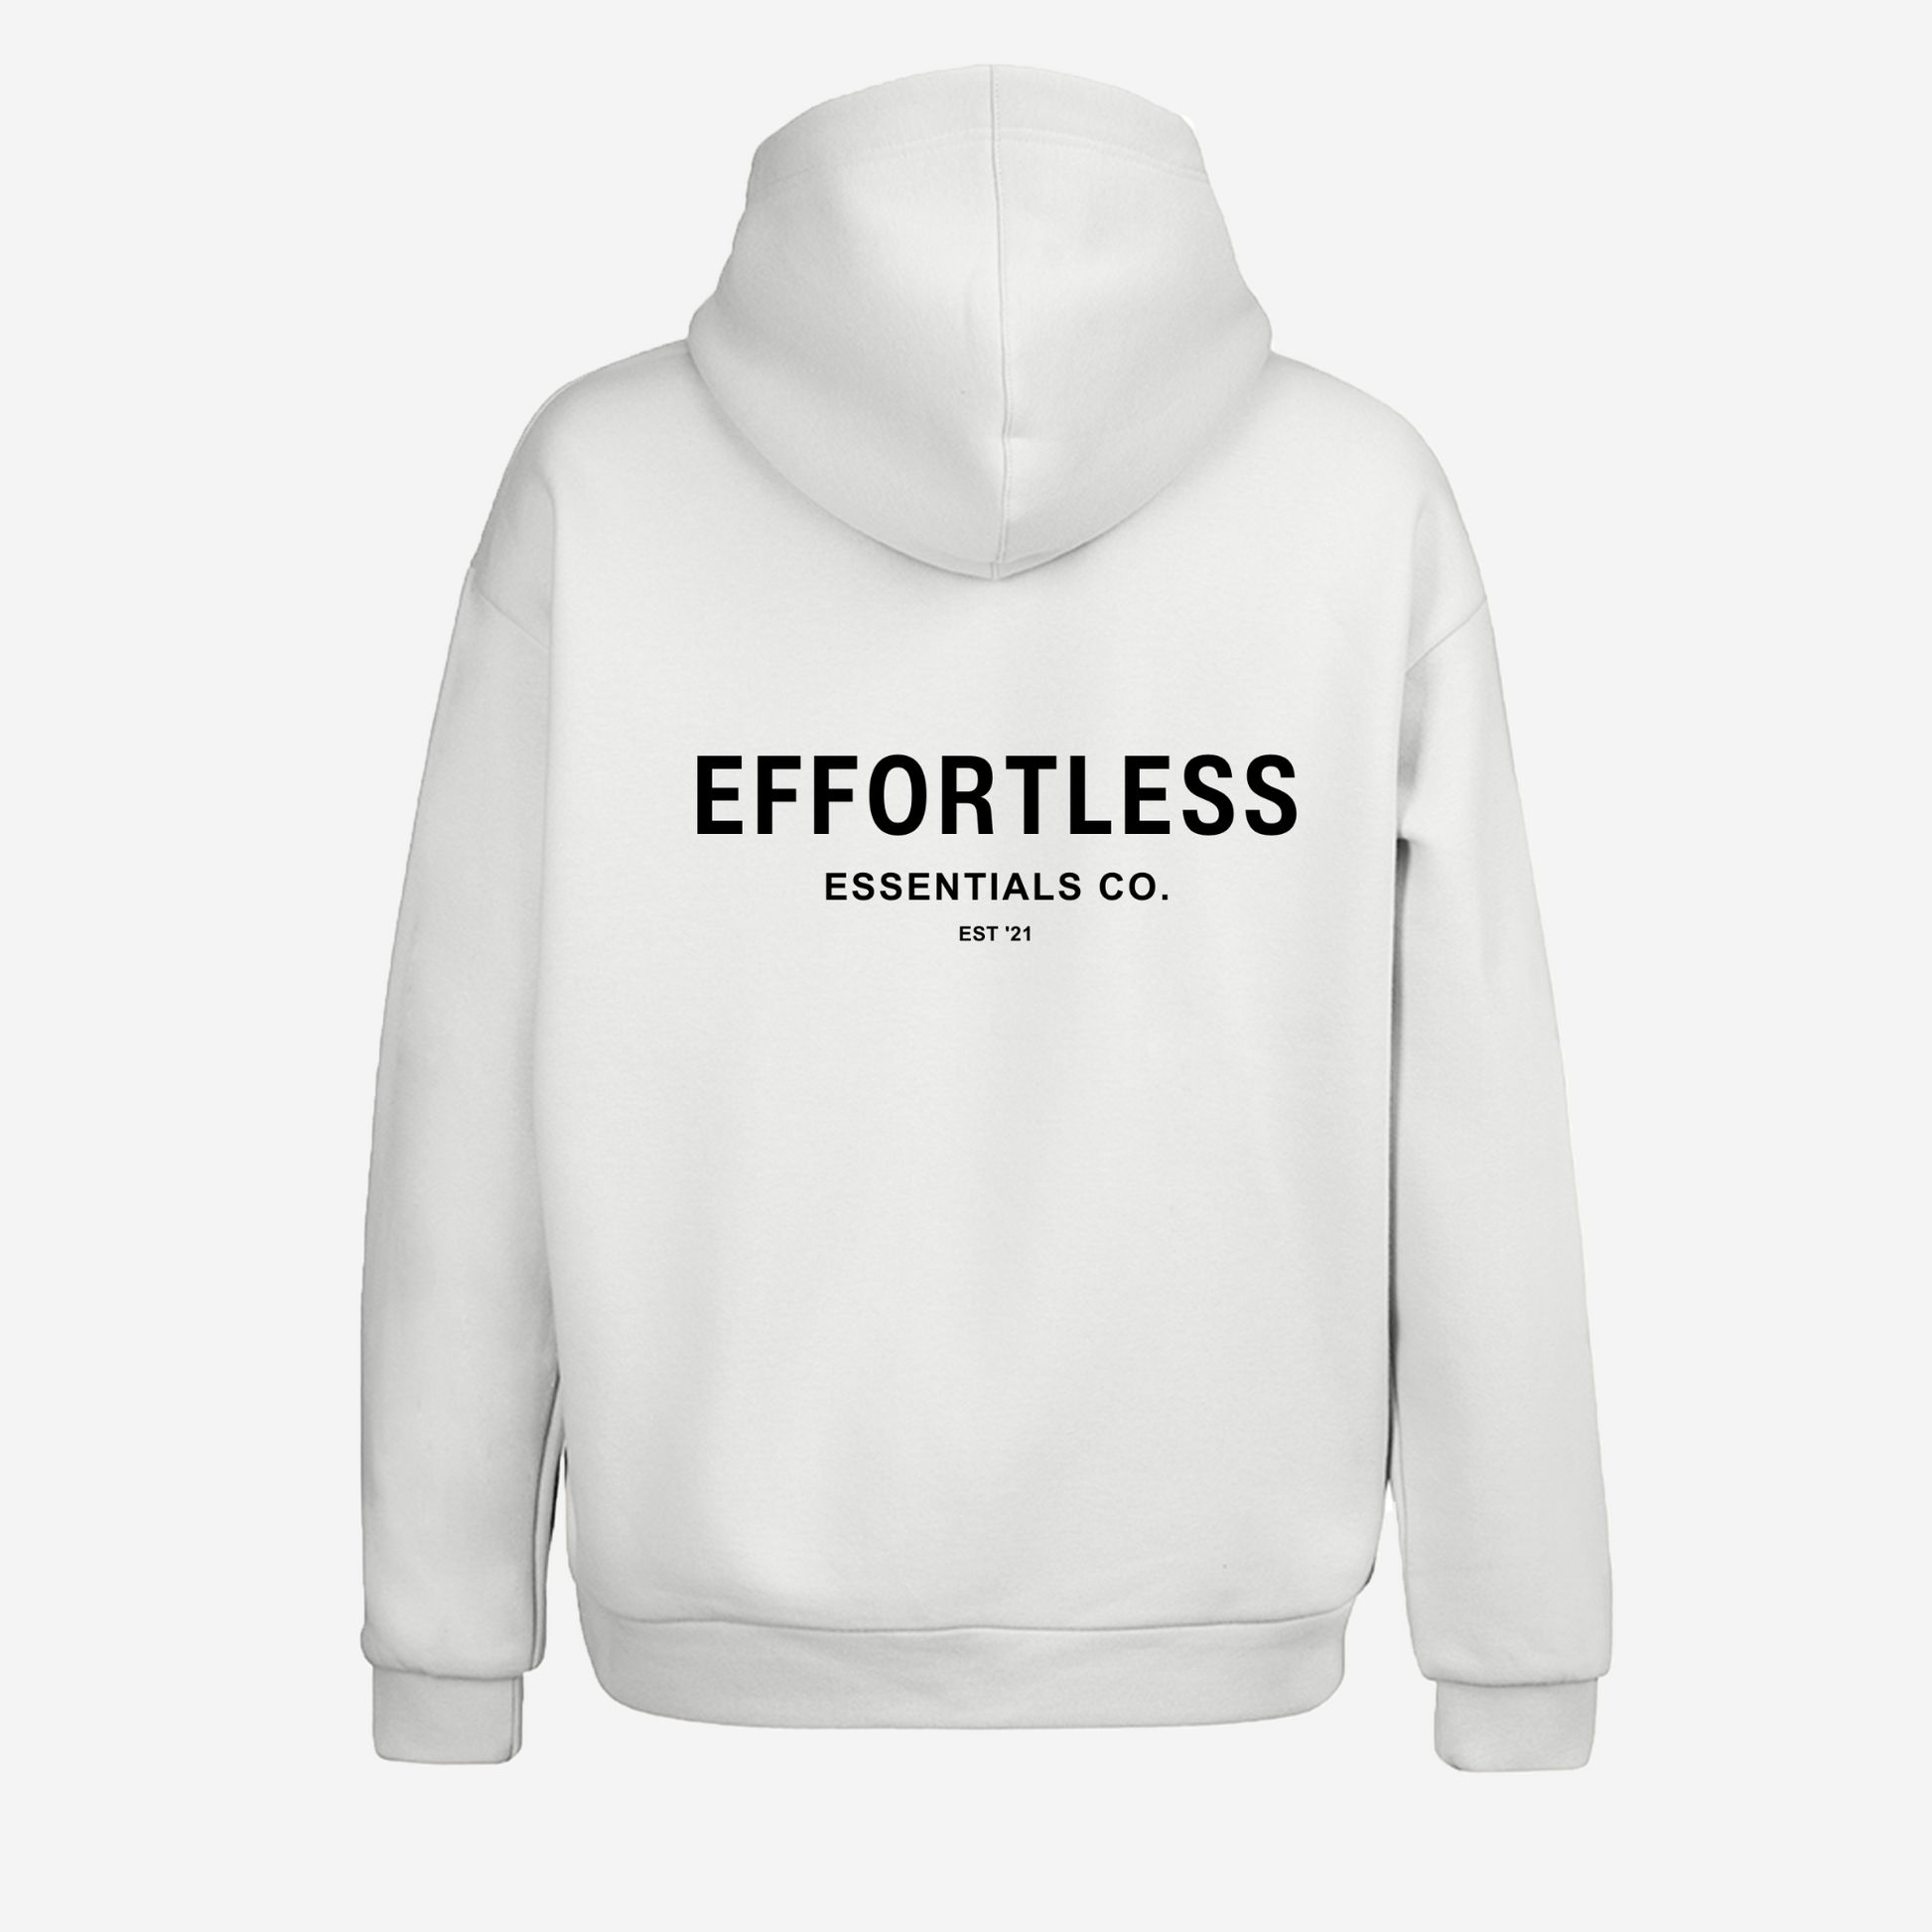 Effortless - Sweatshirt for Women